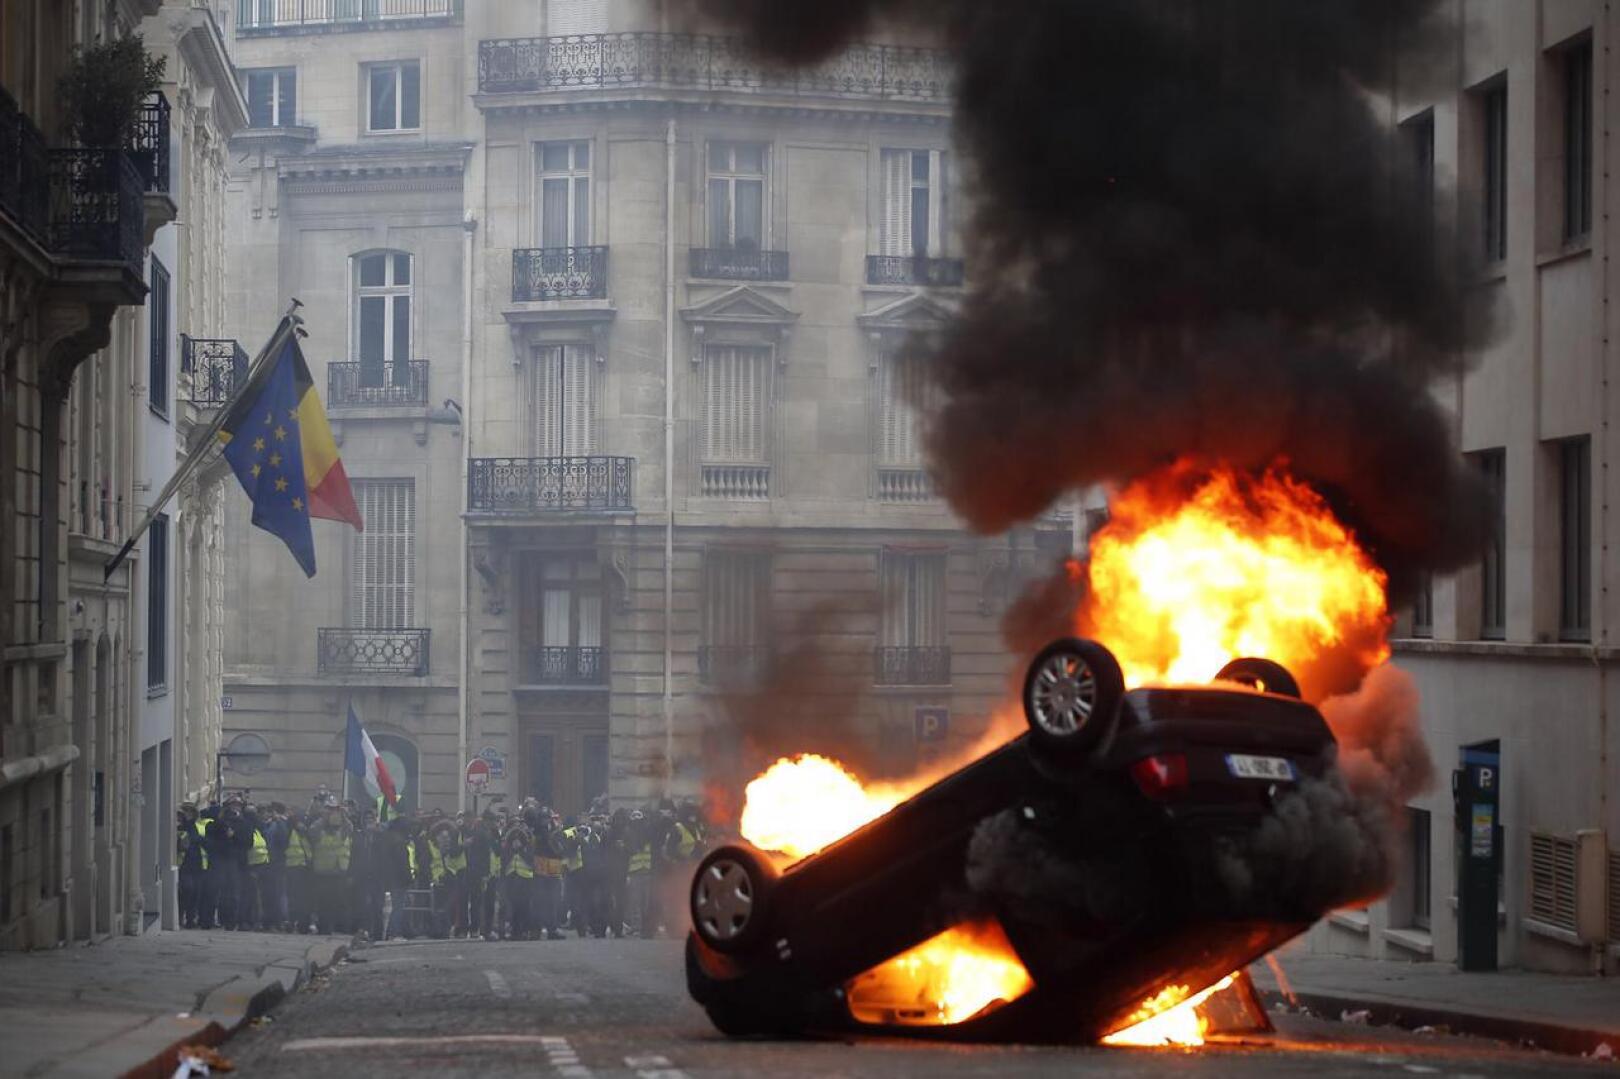 Pariisissa palava auto ja vihainen väkijoukko.  Meidän on huolehdittava, että täällä yhteiskunnan eriarvoistumista vastaan taistellaan yhdessä joka päivä, jotta kenenkään ei tarvitse lähteä vihassa kadulle.